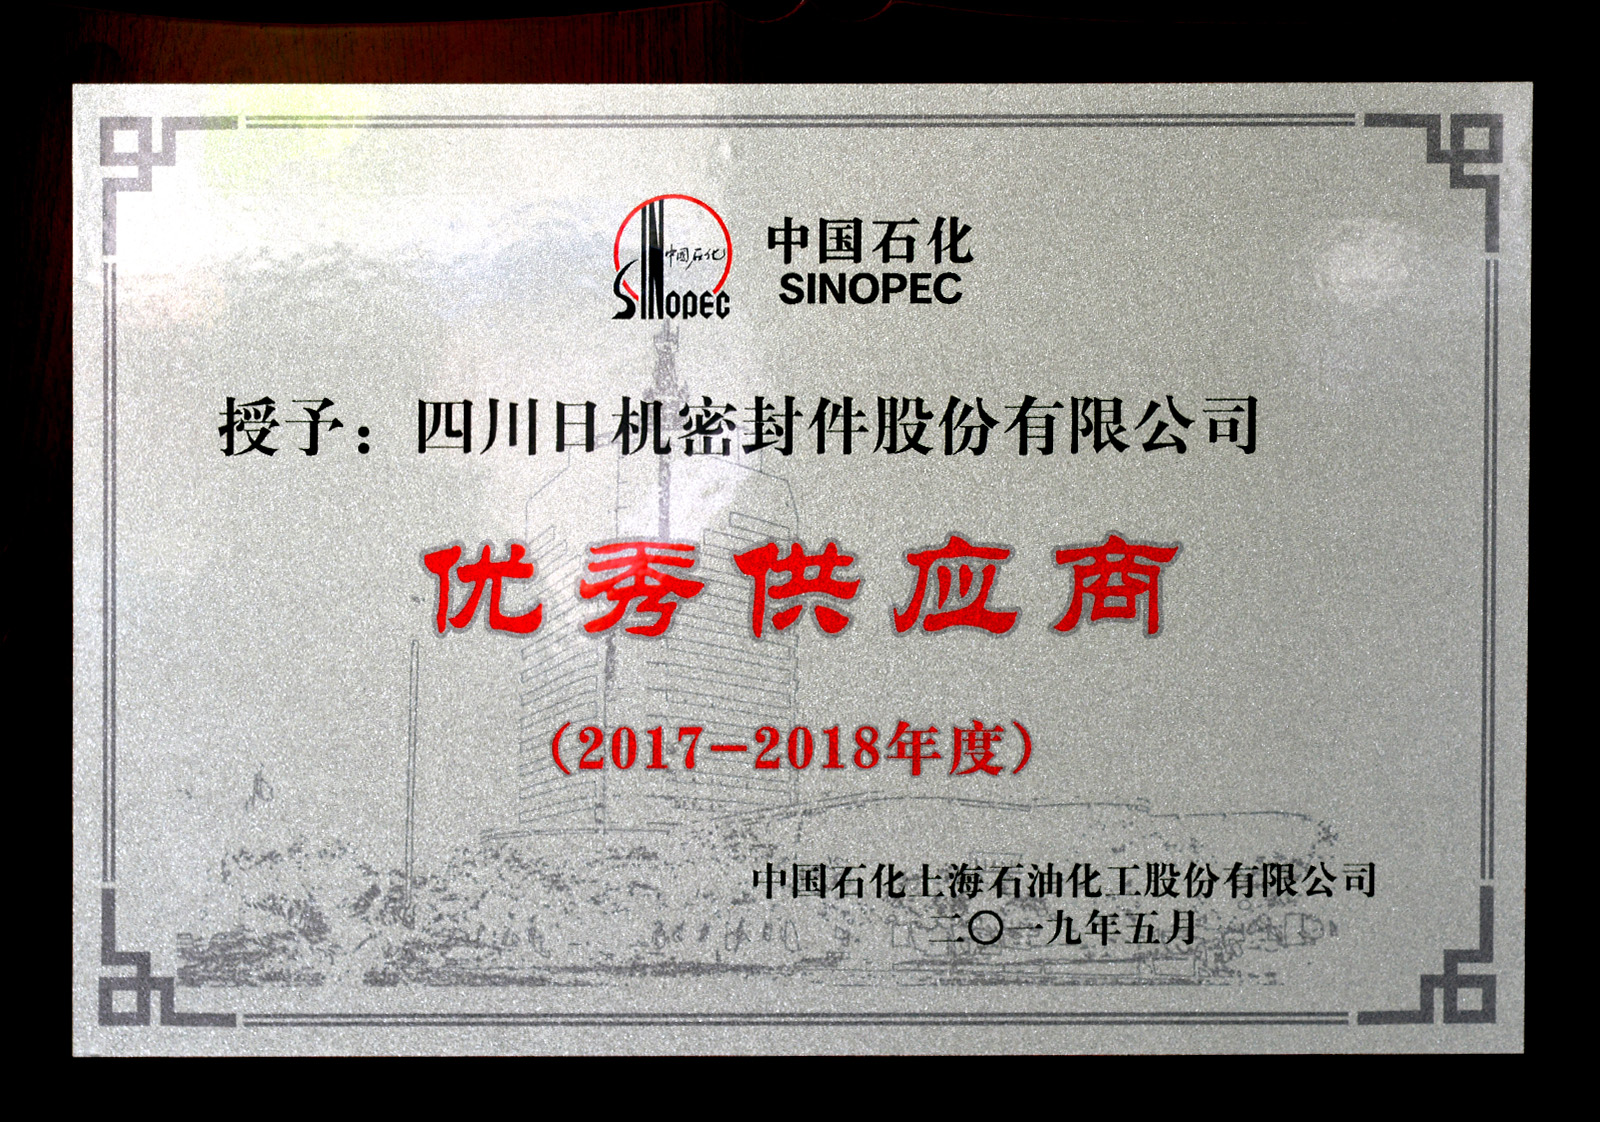 中石化上海石化2017-2018年度優秀供應商